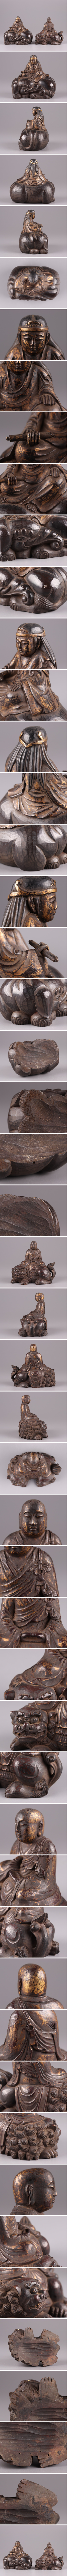 大人気100%新品仏教美術 時代木彫 塗金 文殊菩薩 普賢菩薩 仏像 一対 古作 時代物 極上品 初だし品 2681 仏像